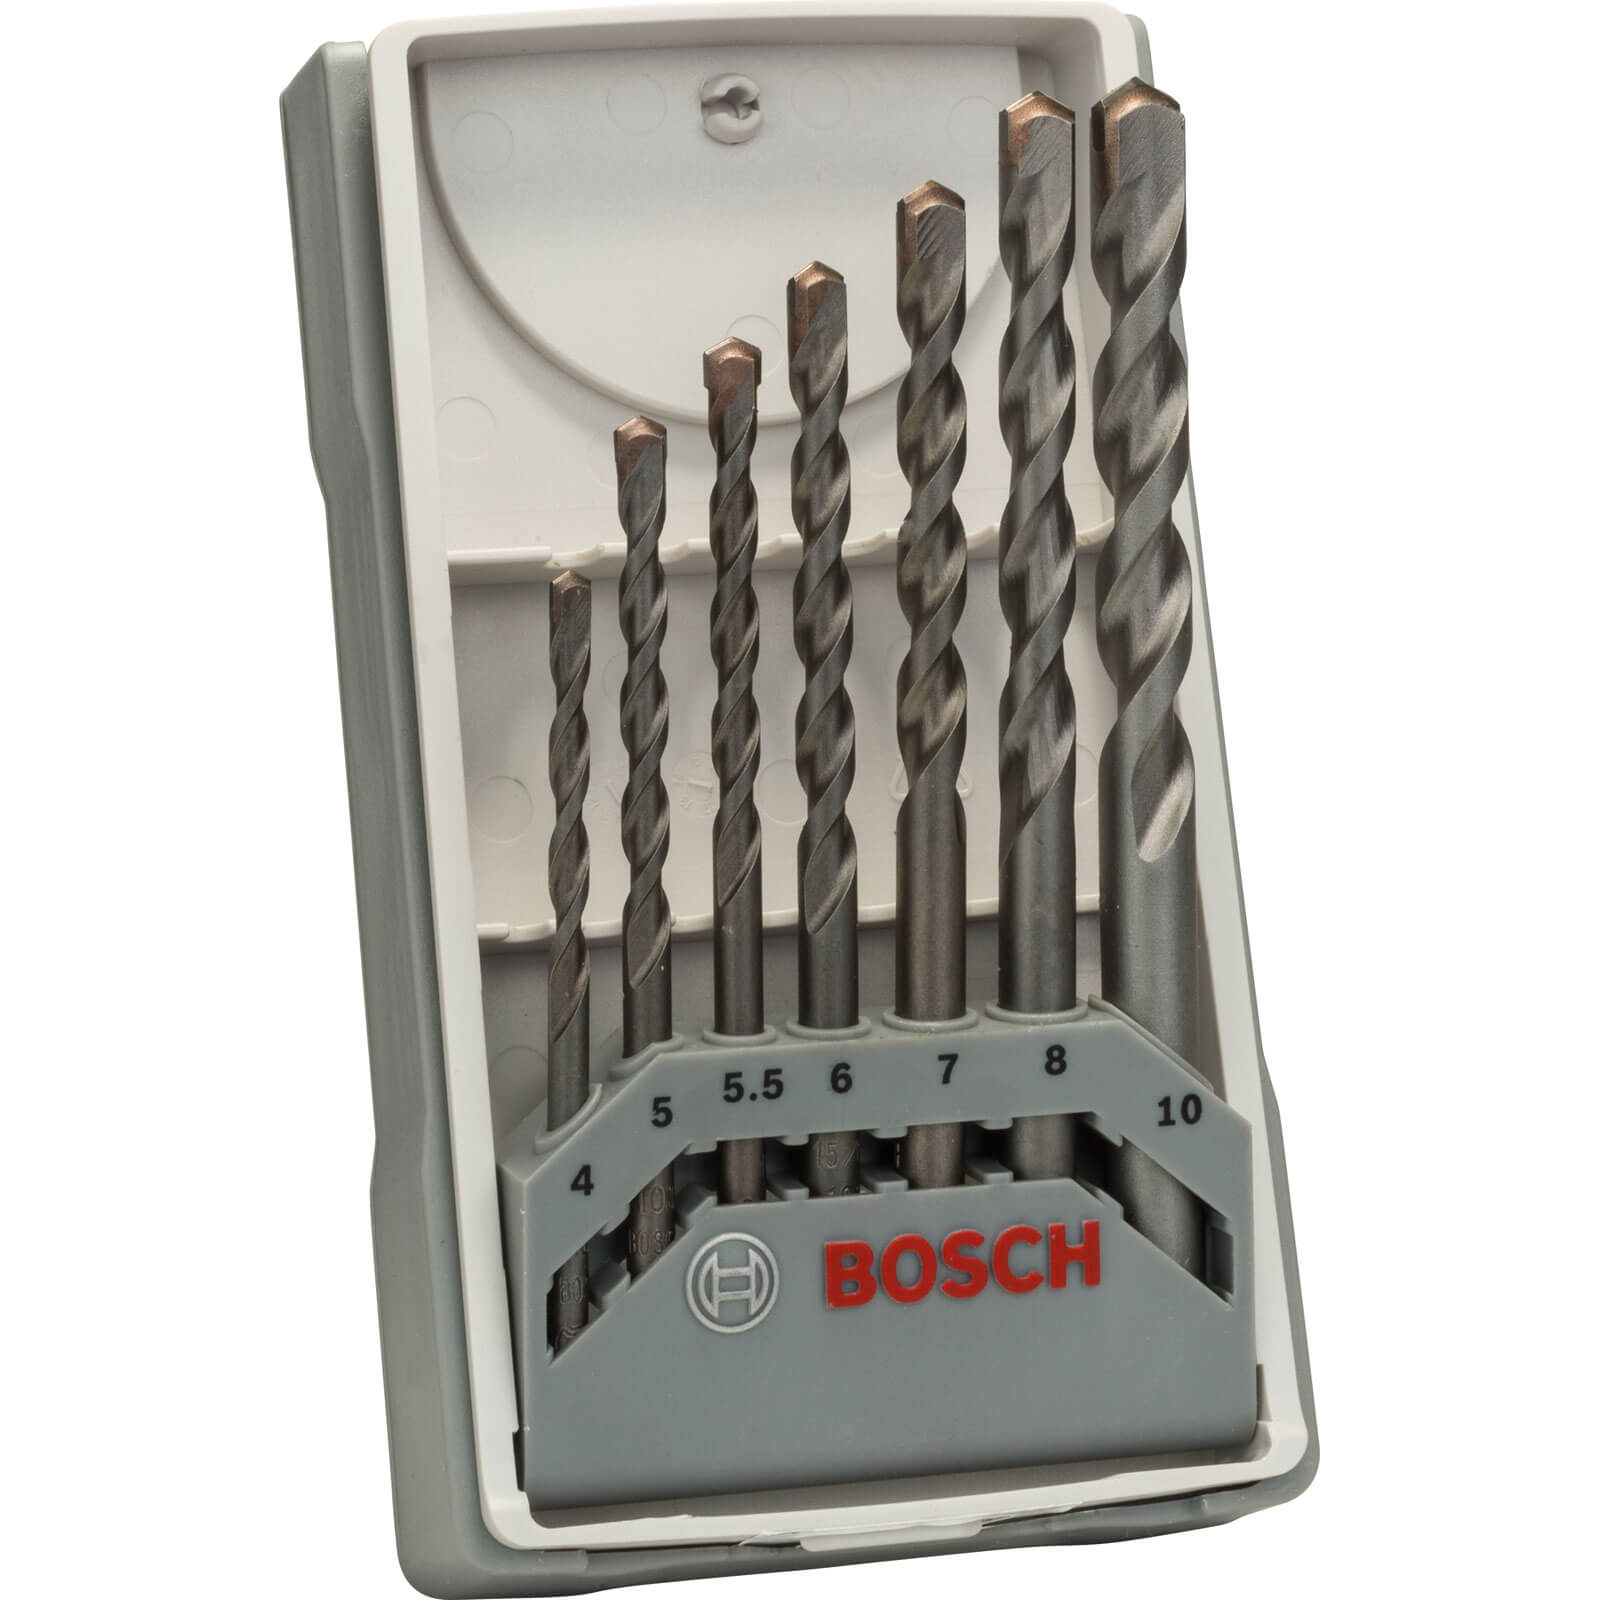 Photo of Bosch 7 Piece Masonry Drill Bit Set